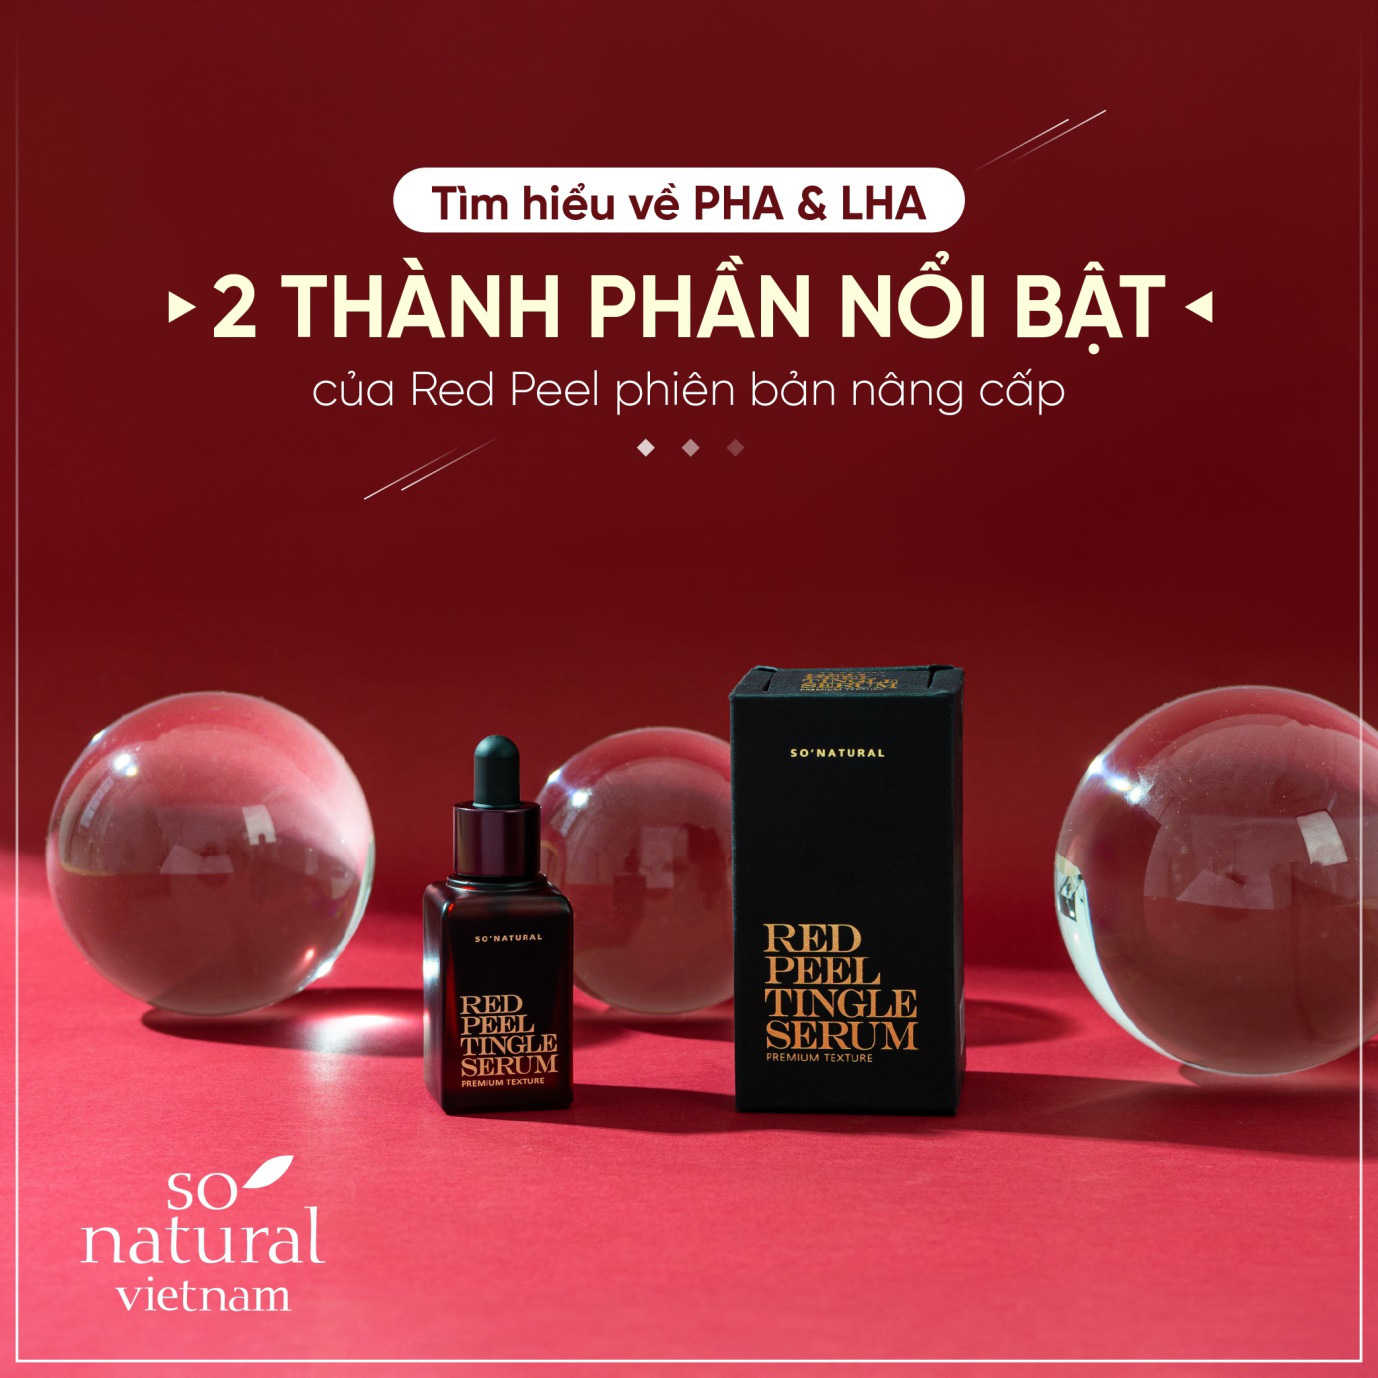 Mỹ phẩm So Natural giúp phụ nữ Việt giữ gìn nhan sắc - Ảnh 3.